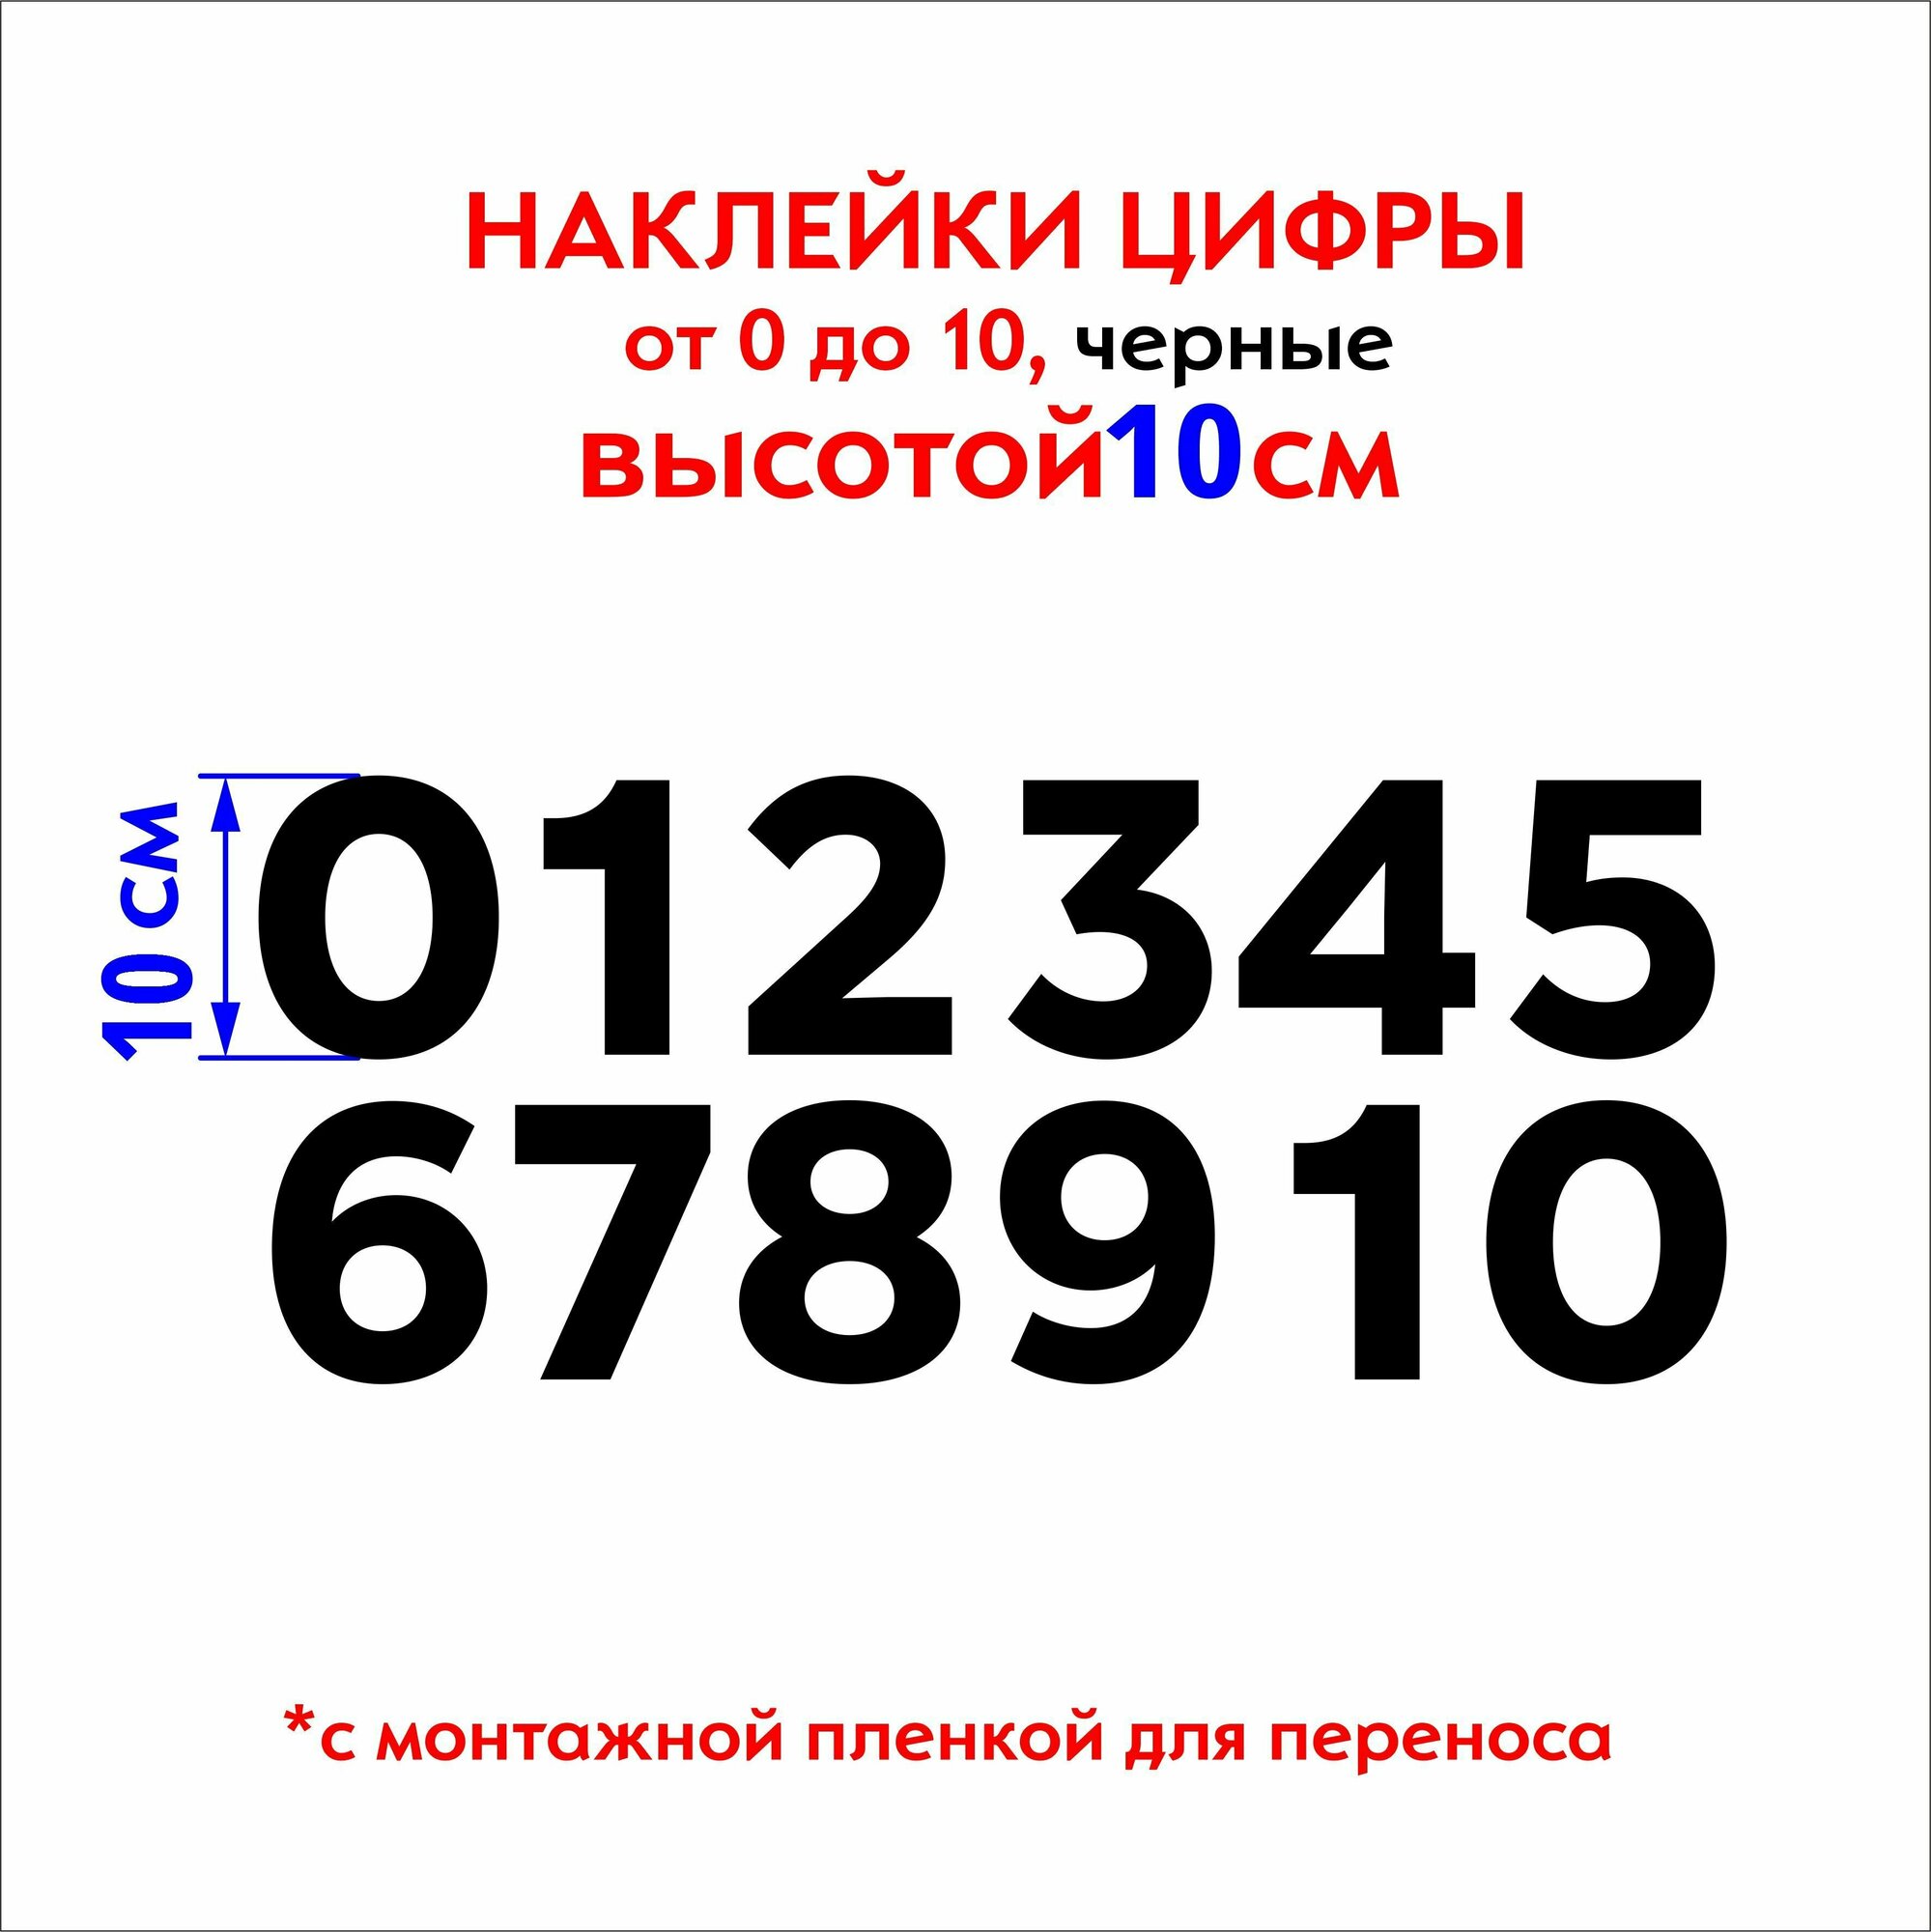 Наклейки цифры (стикеры набор чисел), наклейка на авто набор цифр, черные, 10 см